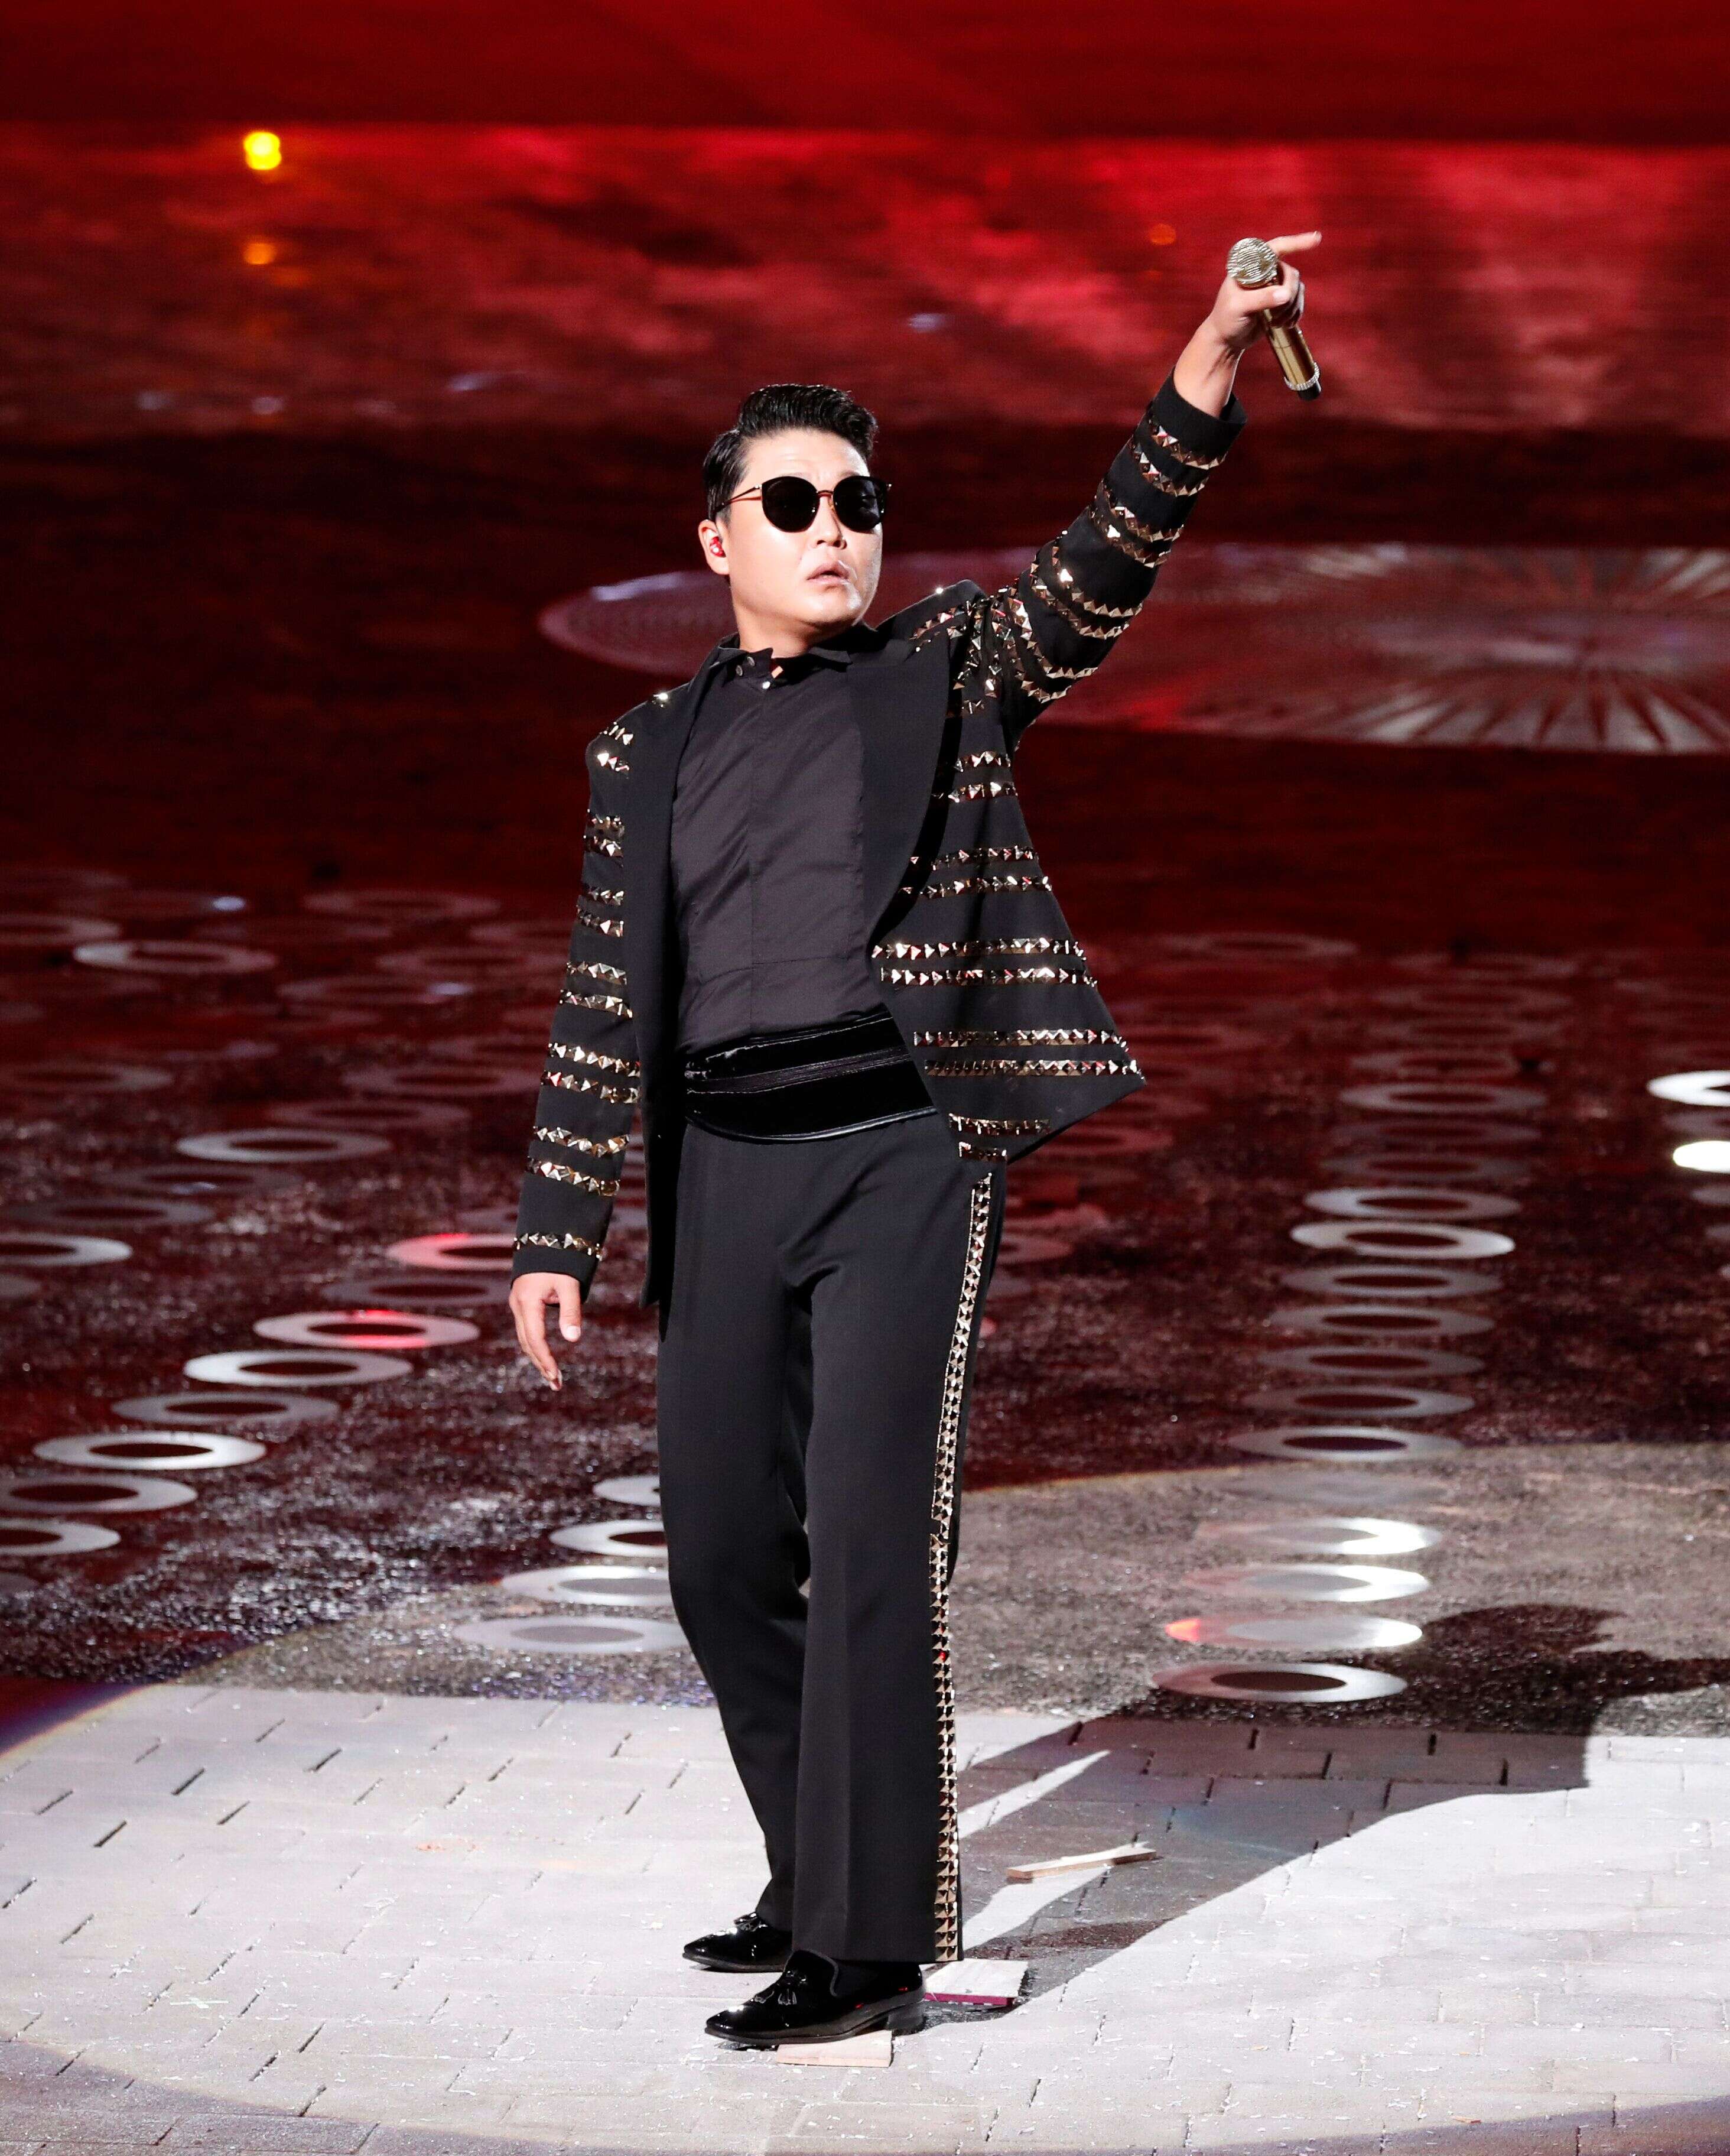 Le chanteur Psy a été entendu dans le cadre d'une enquête pour prostitution dans le monde de la K-Pop.